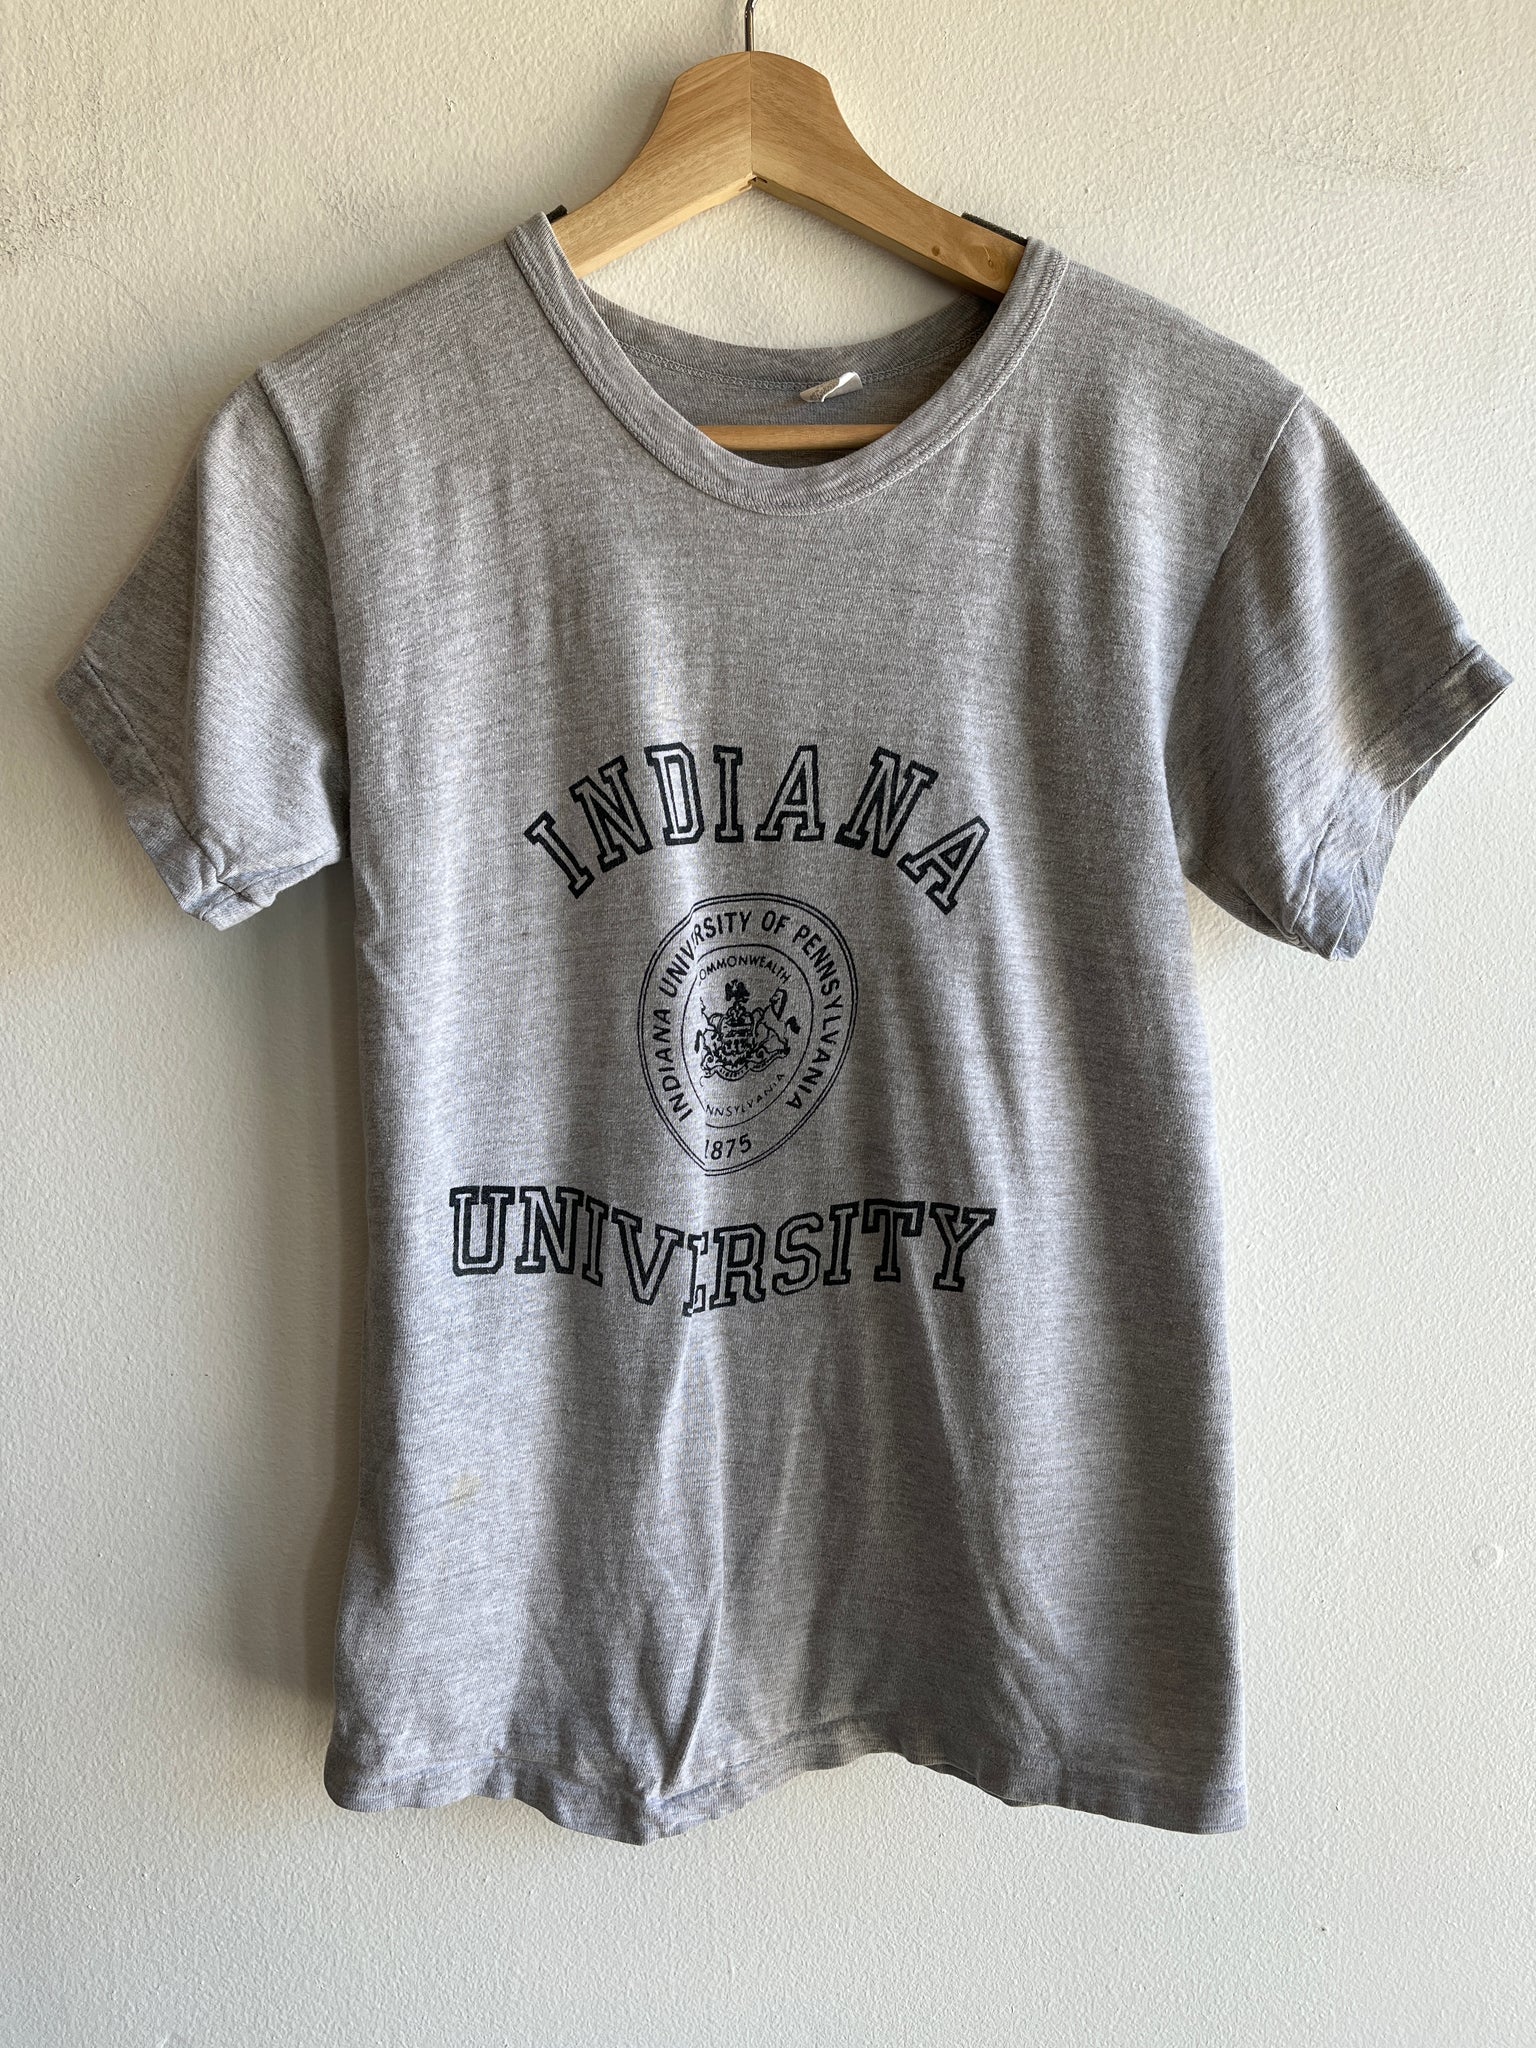 Vintage 1960’s Indiana University T-Shirt